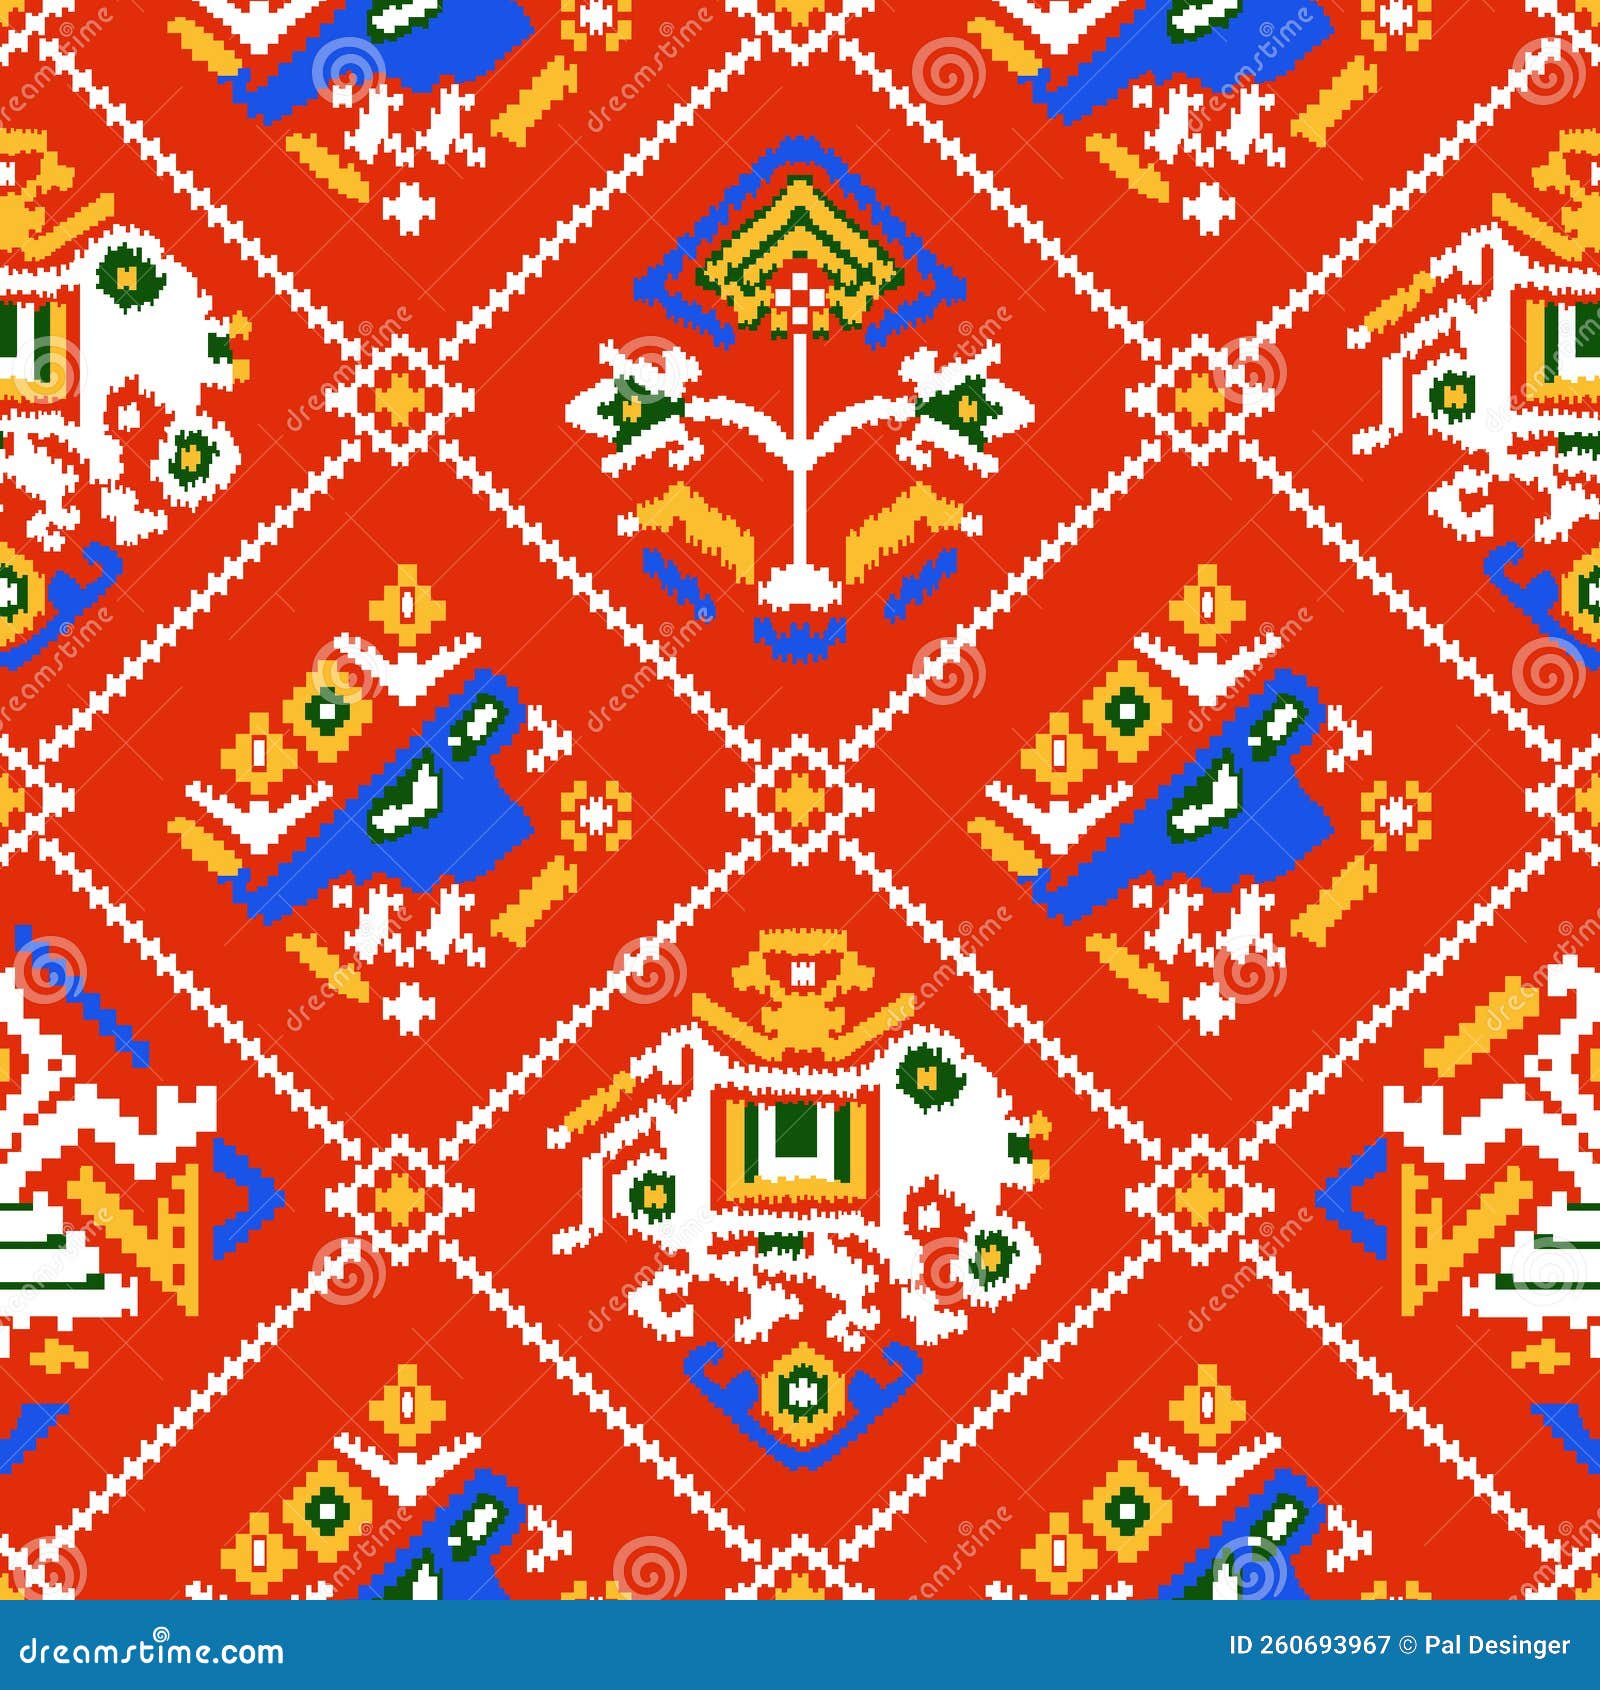 patola pattern red blue pattern art